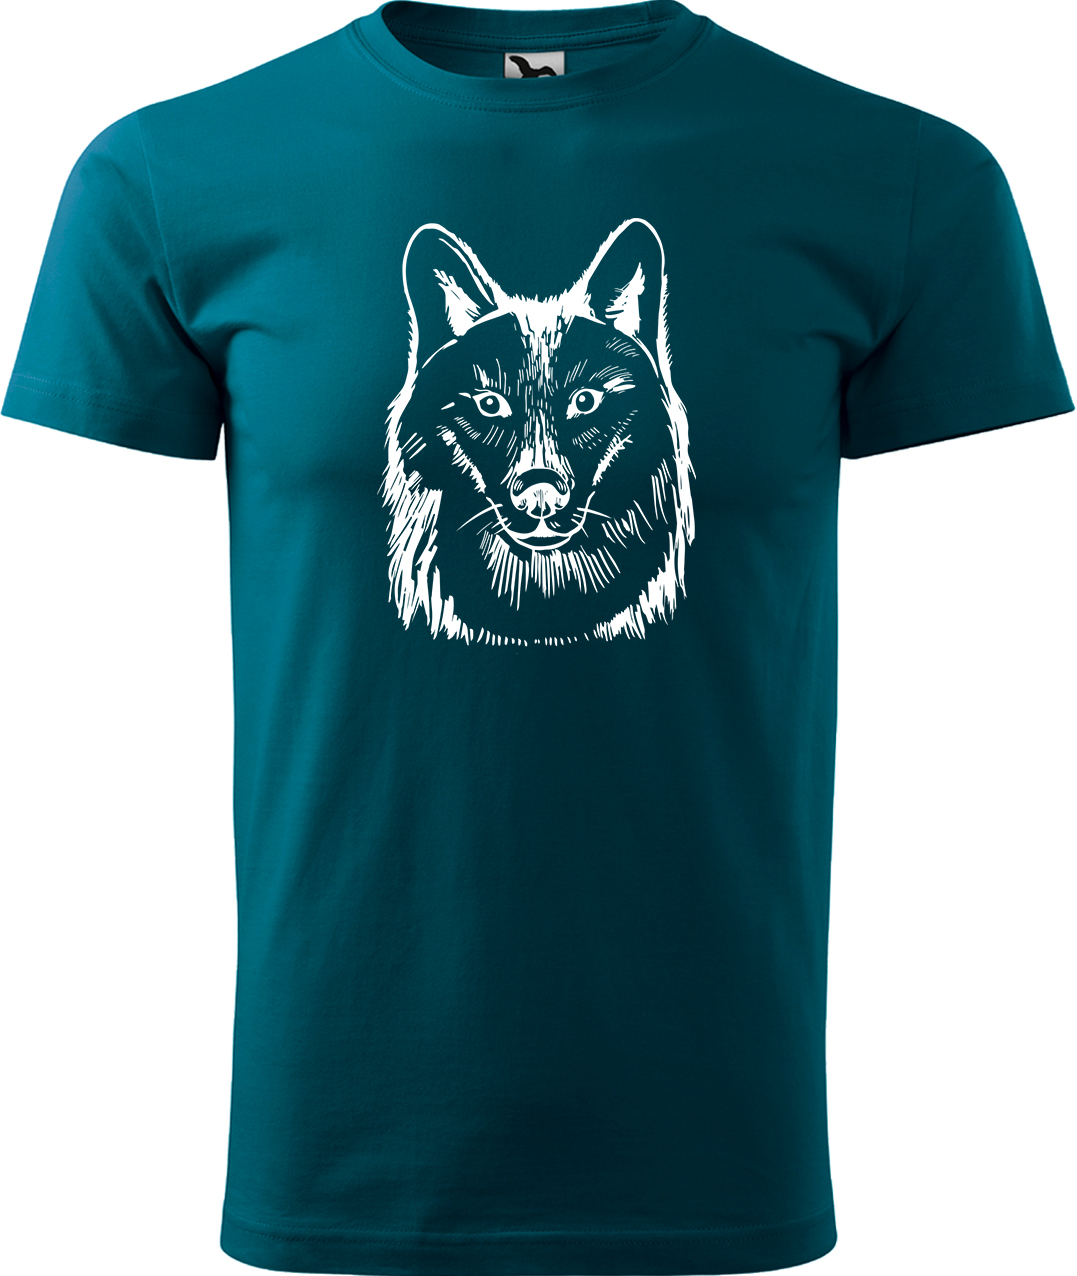 Pánské tričko s vlkem - Kresba vlka Velikost: M, Barva: Petrolejová (93), Střih: pánský